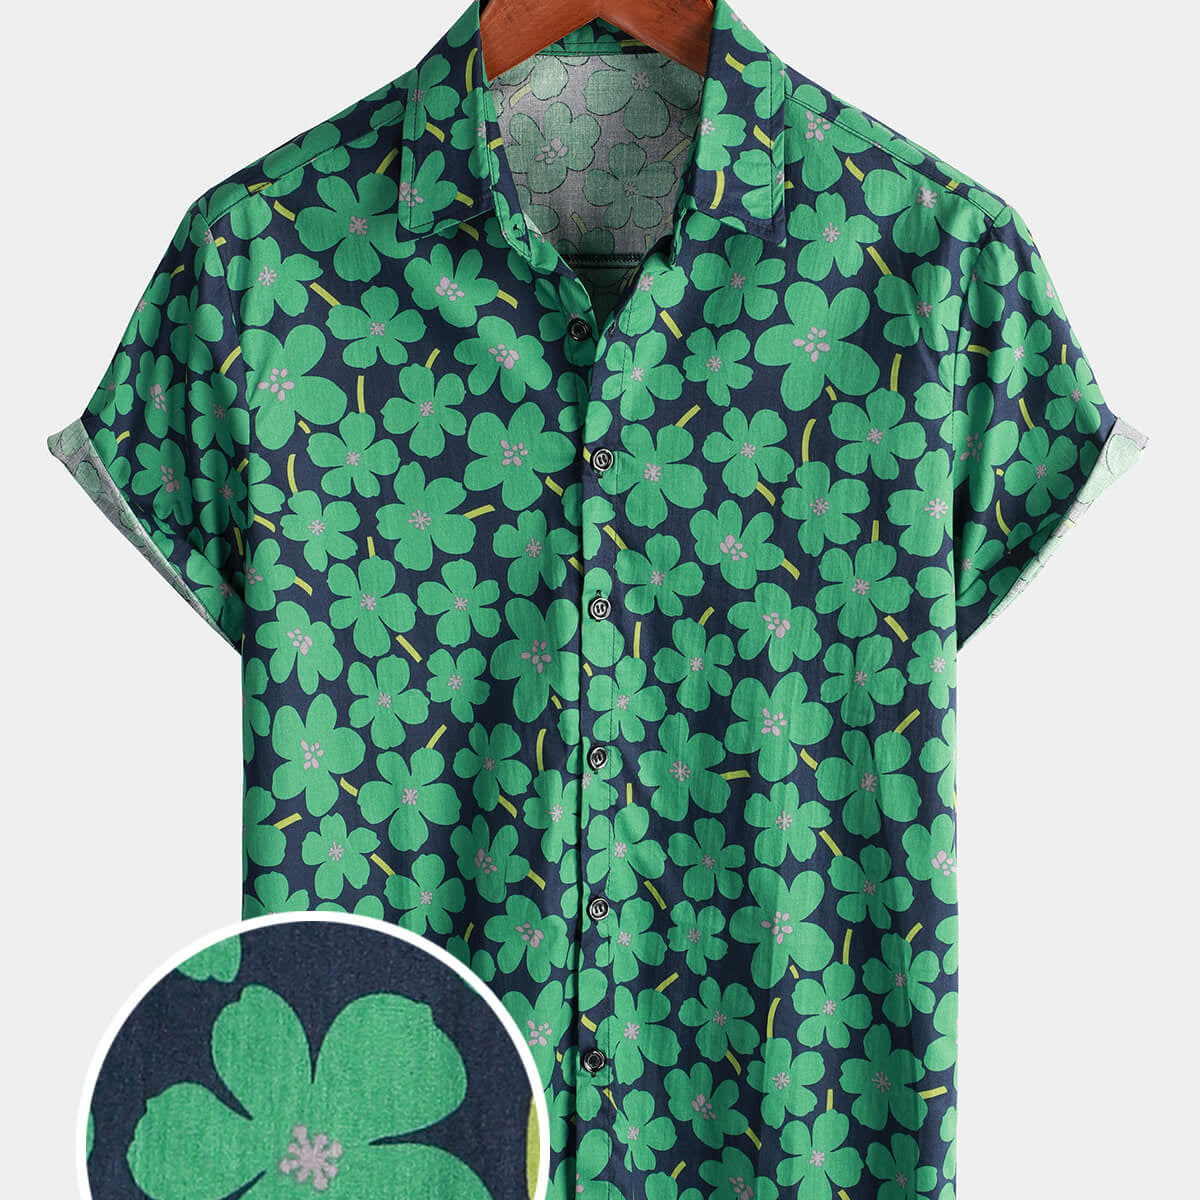 Men's Beach Holiday Flower Print Button Up Floral Green Hawaiian Short Sleeve Shirt